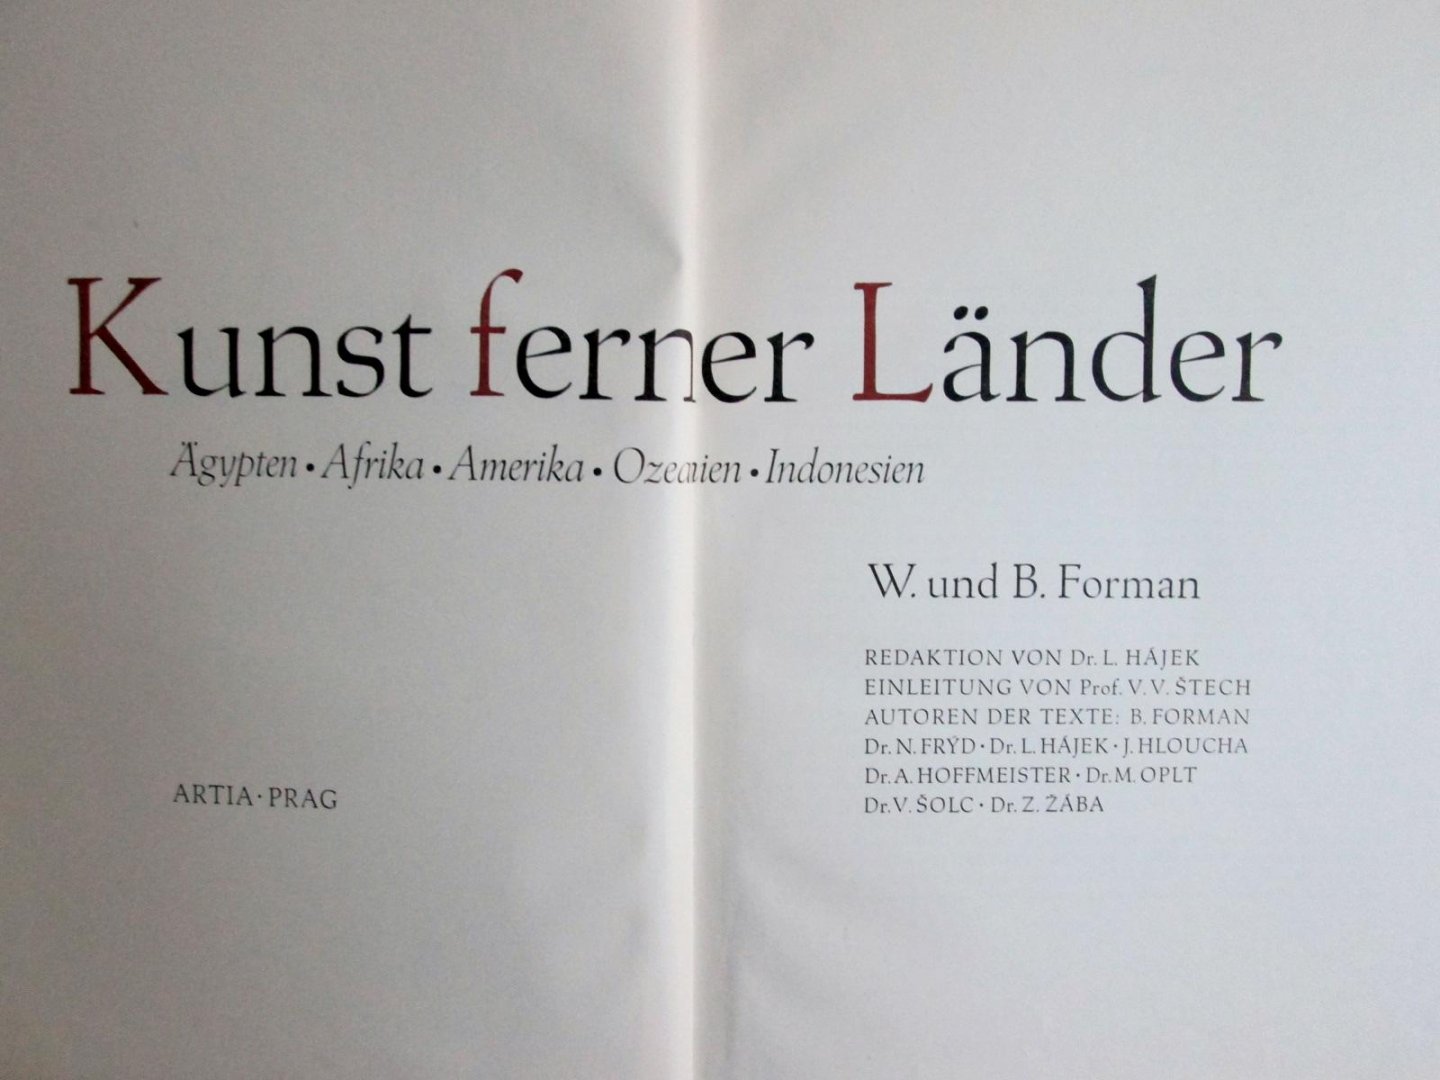 W. und B. Forman, - Kunst ferner Länder, Ägypten Afrika Amerika Ozeanien Indonesien